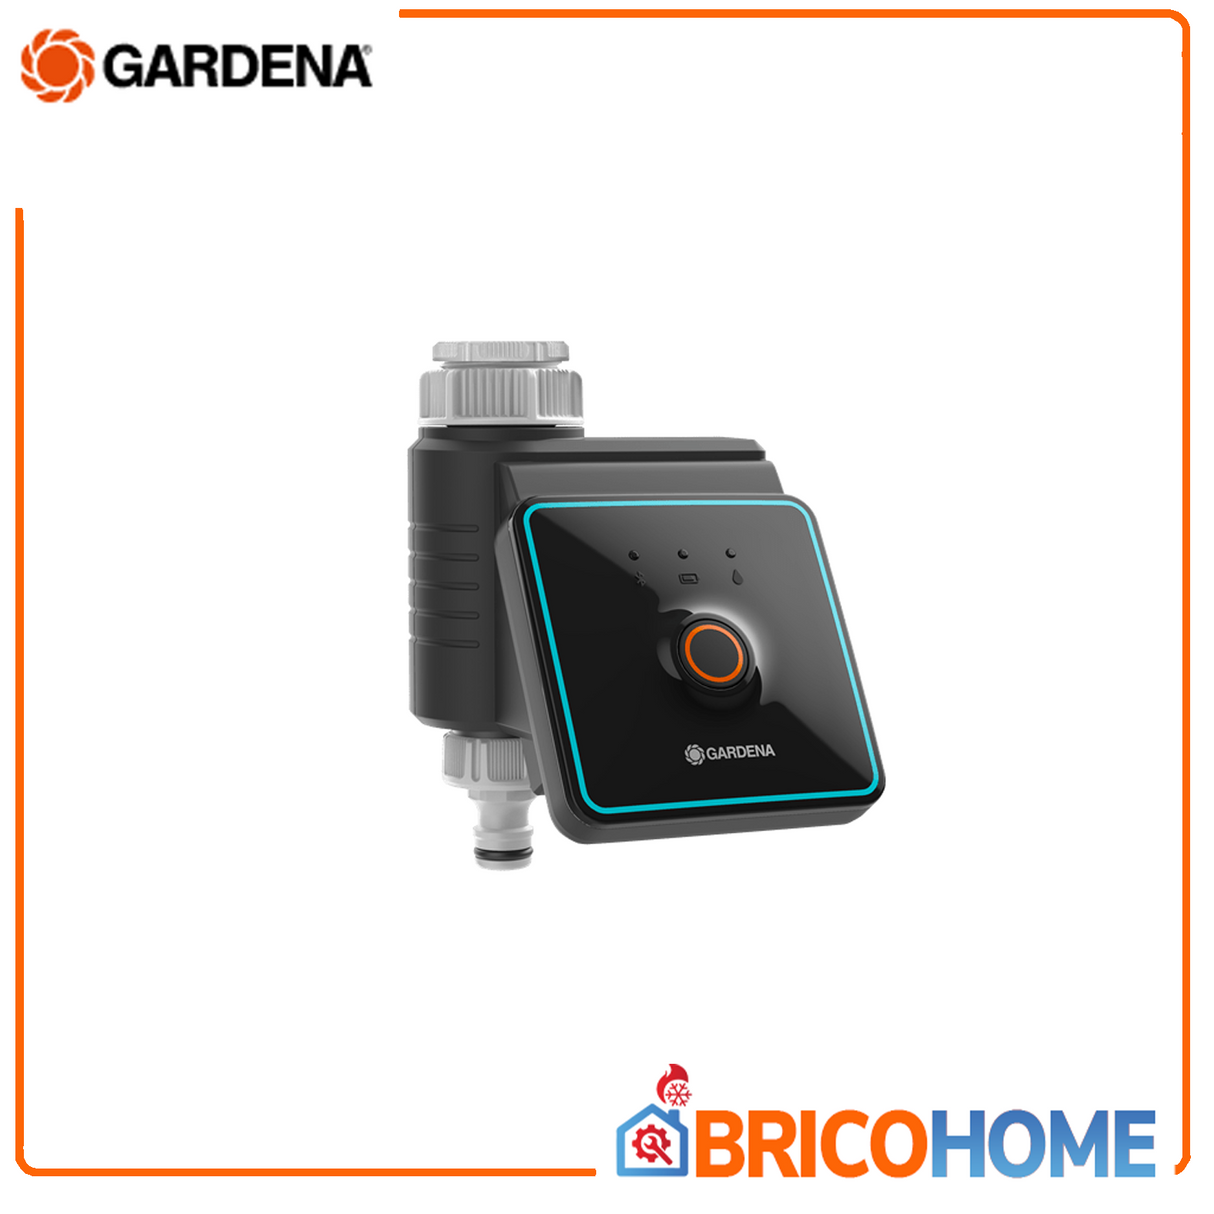 GARDENA Bluetooth® Bewässerungscomputer-Programmierer